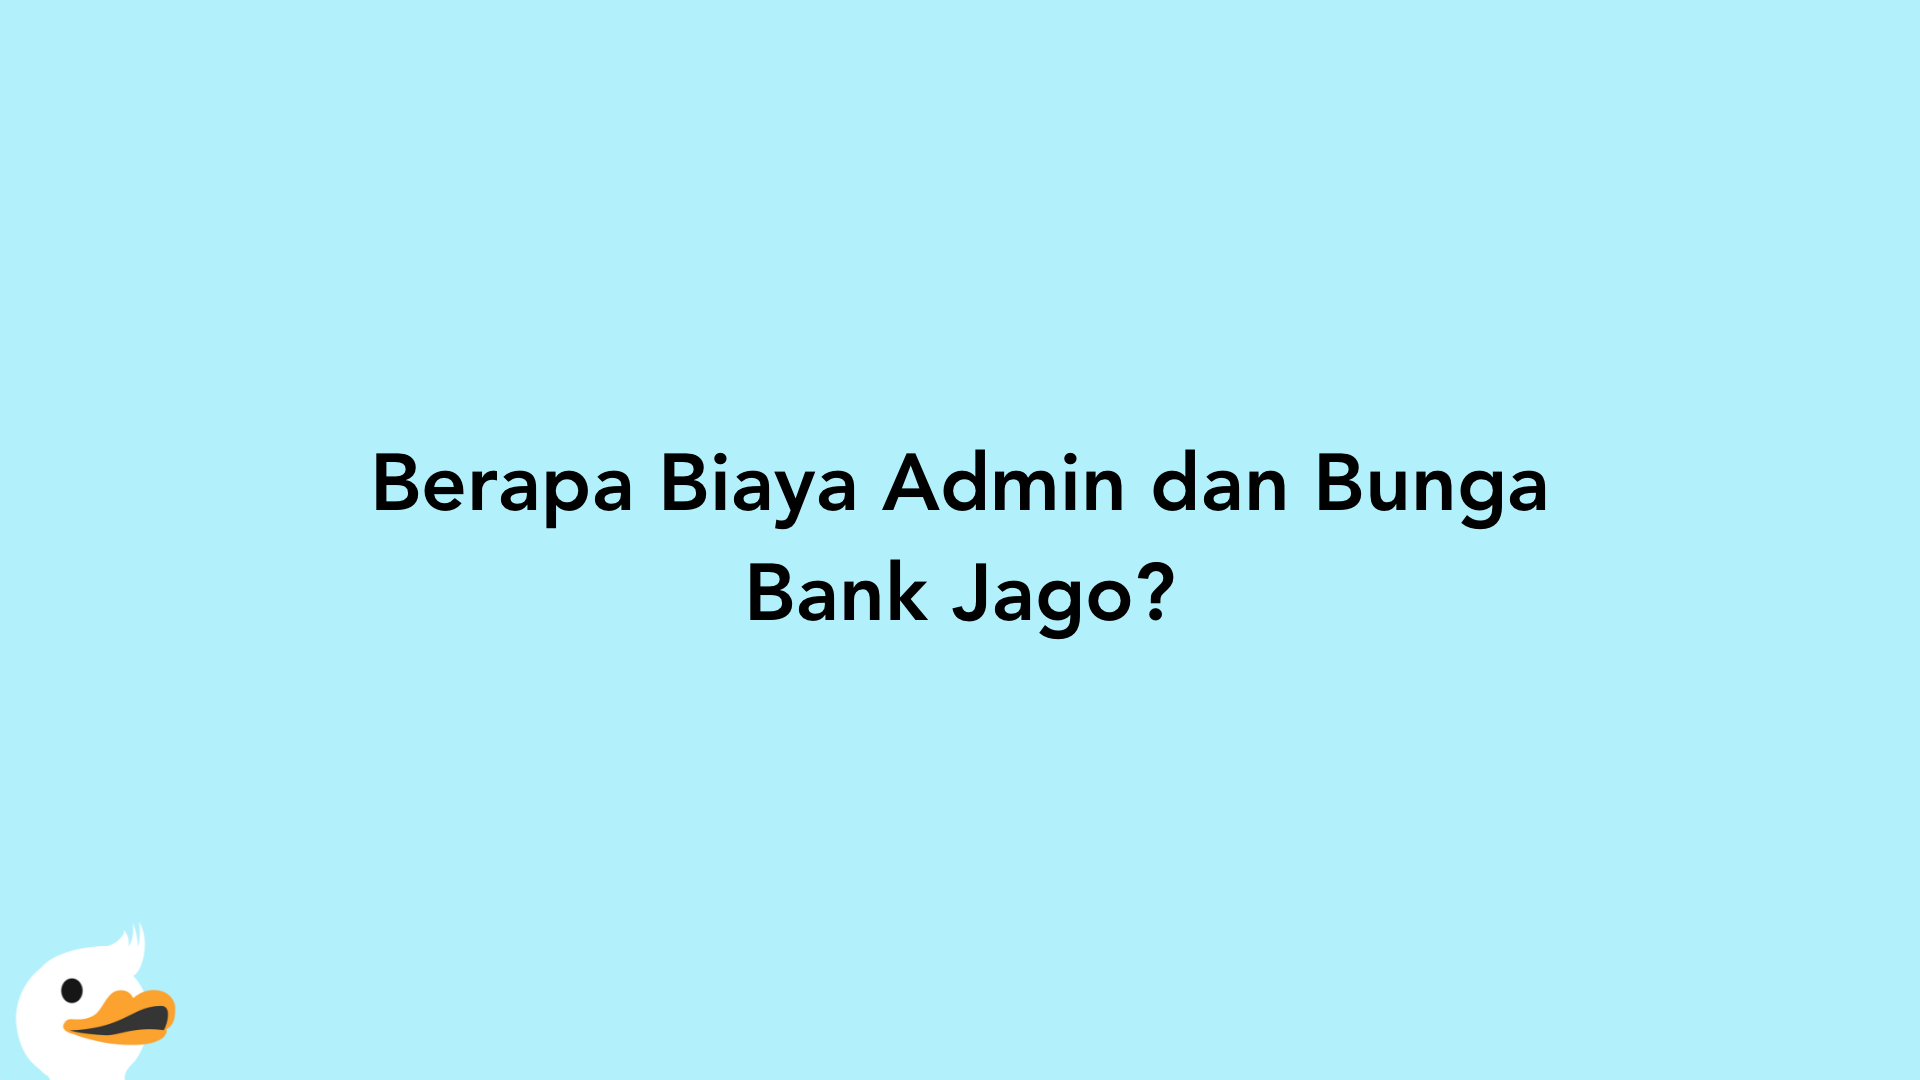 Berapa Biaya Admin dan Bunga Bank Jago?